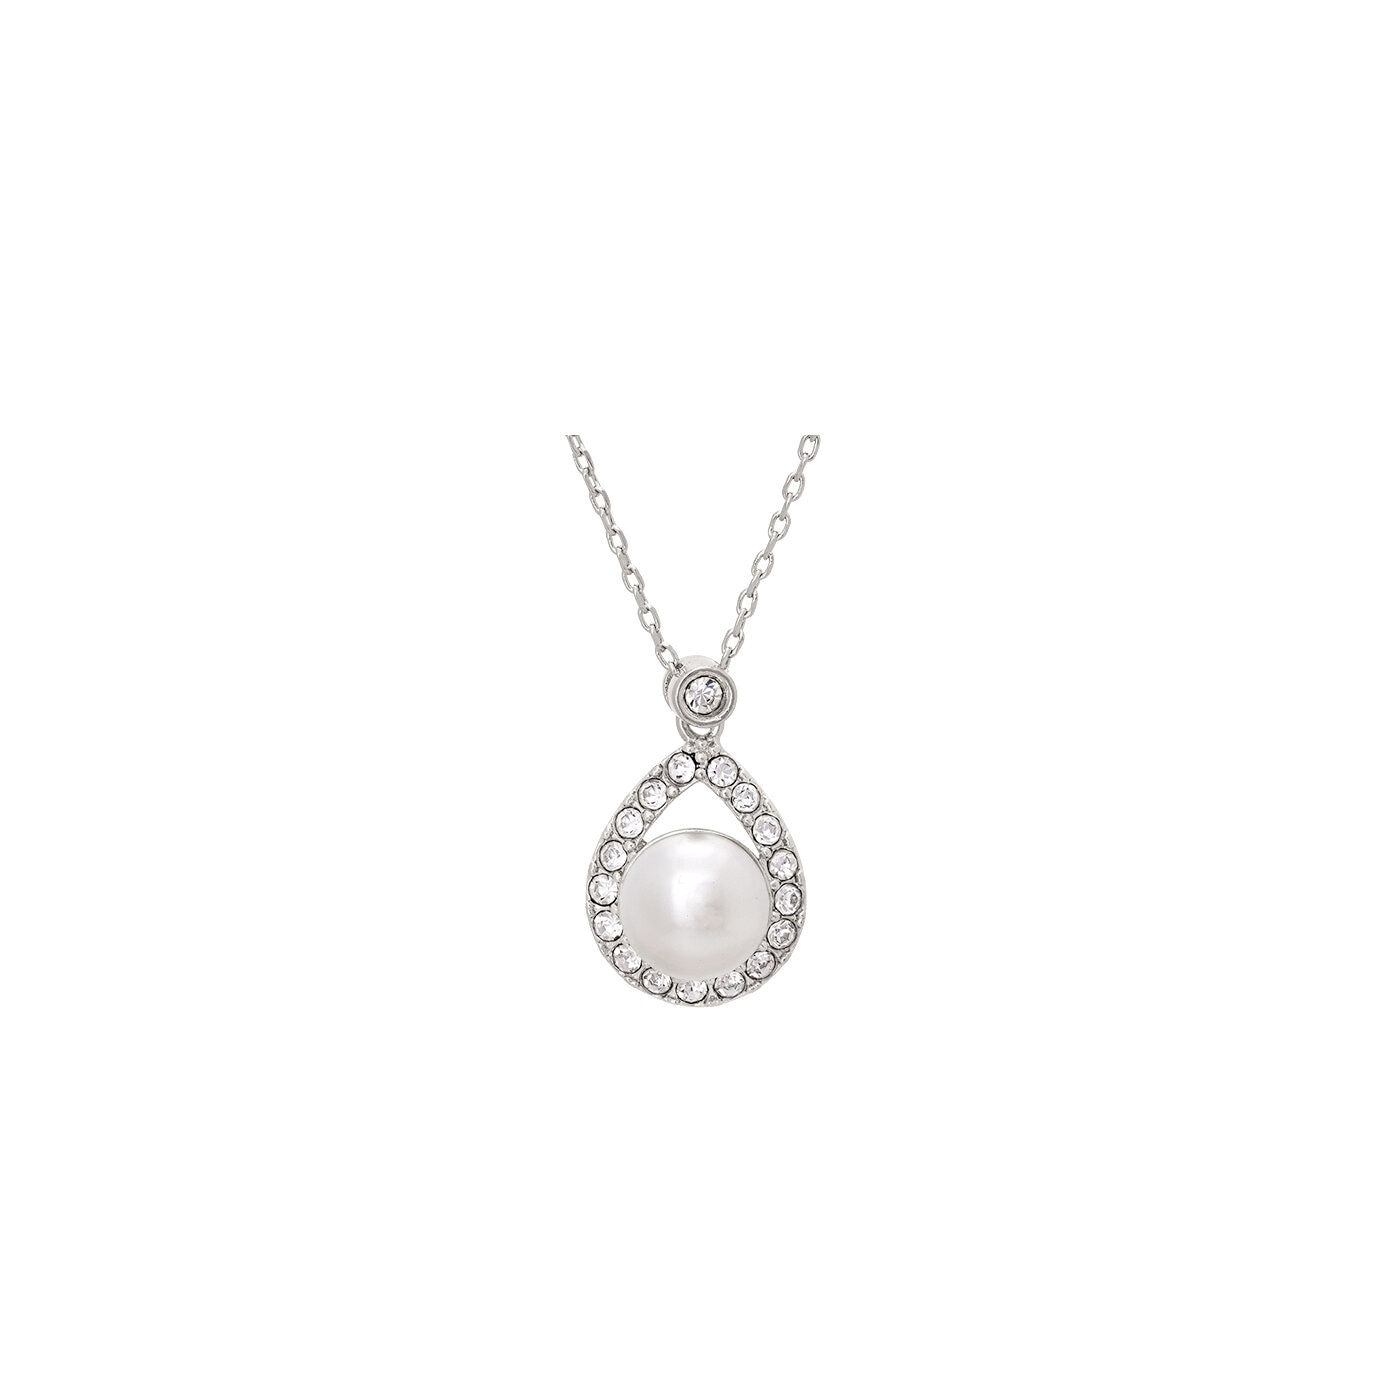 Emmylou necklace - Ivory (Silver)